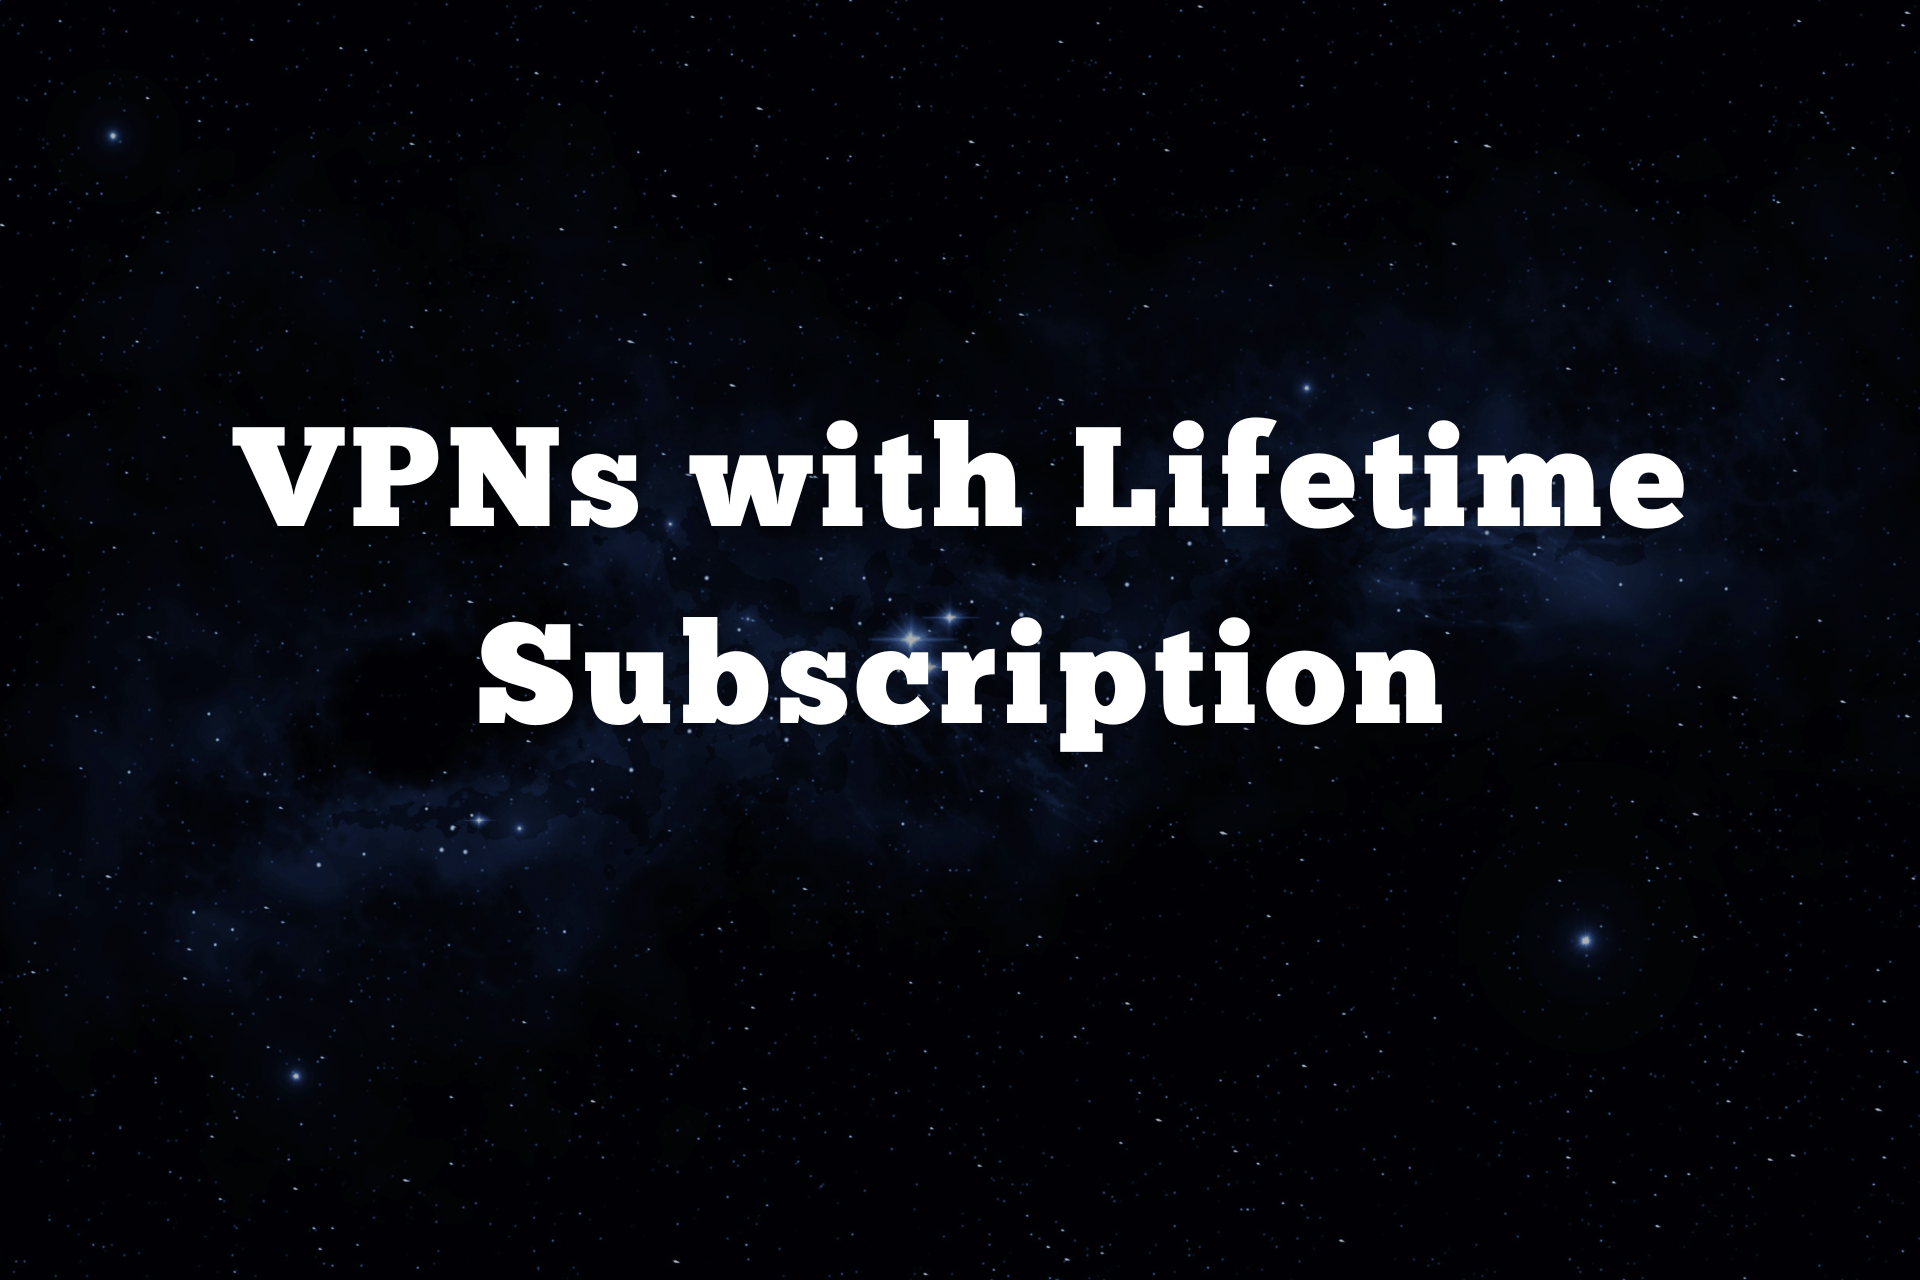 vpns lifetime subscription